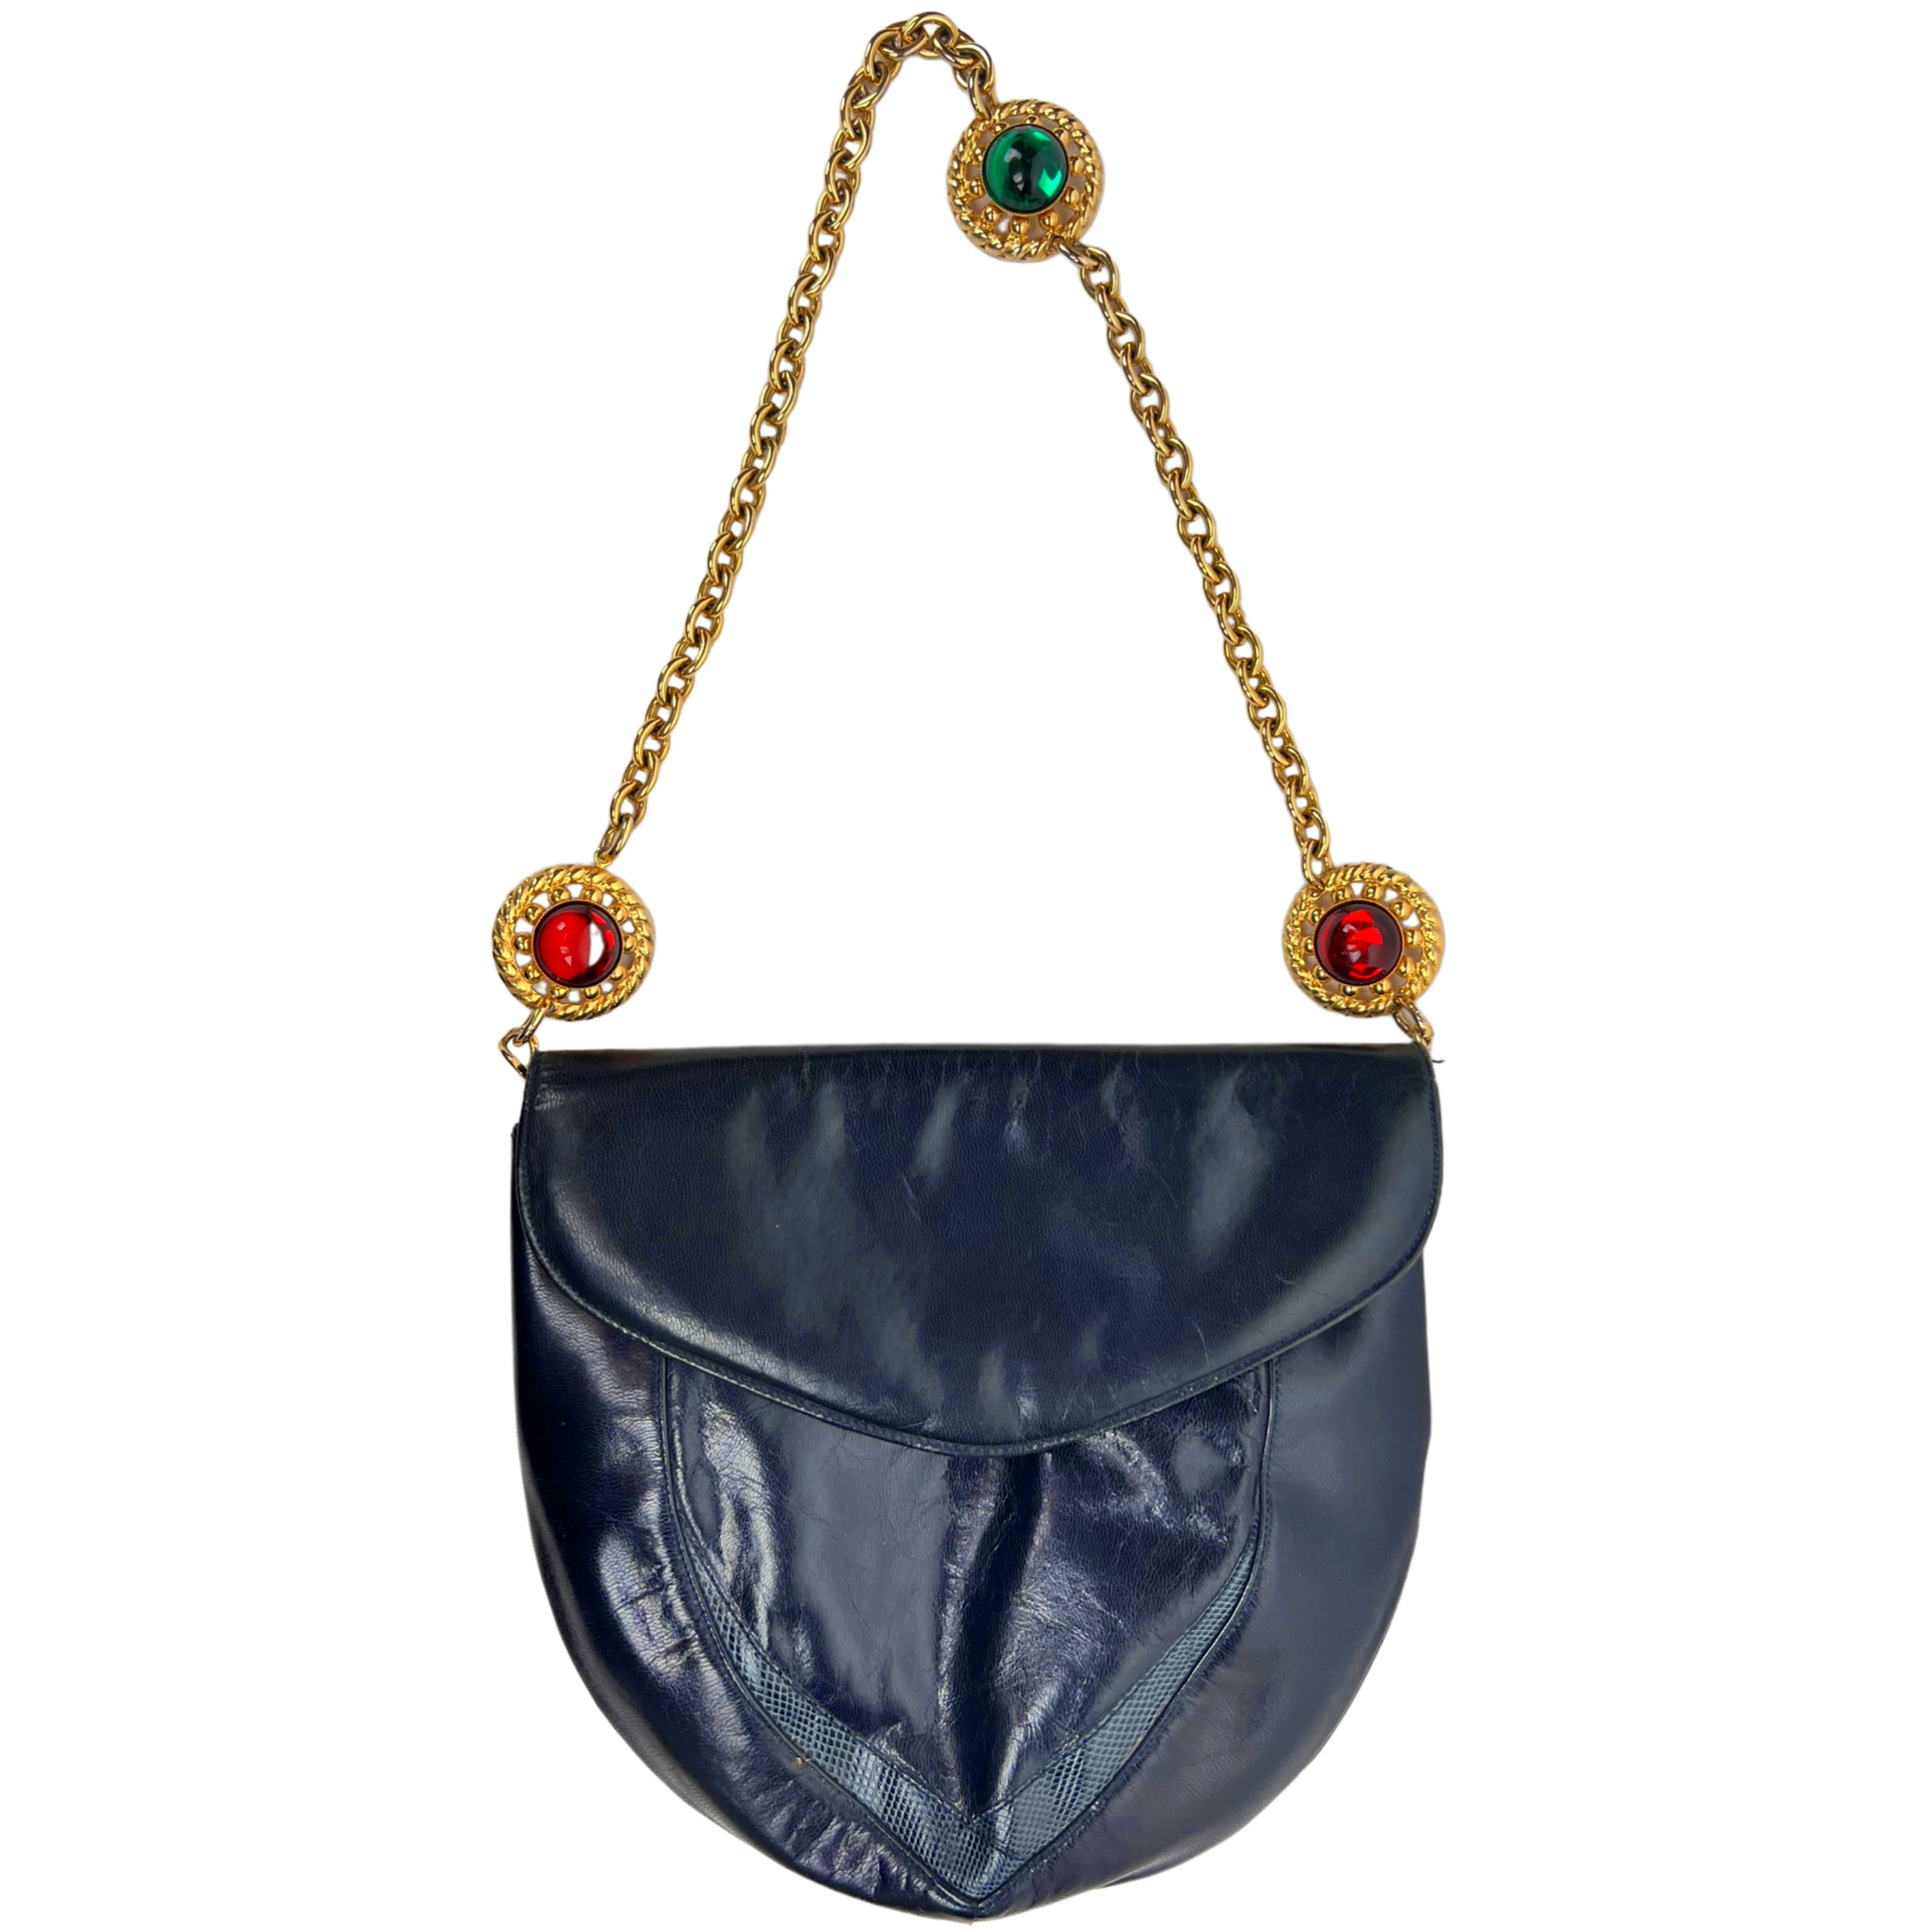 RARE BLUE HANDBAG - Vintage Shoulder bag - Vintage Leather Purse - 70's  60's Folk - Boho Handbag - Tooled Bucket Bag - Festival Fashion